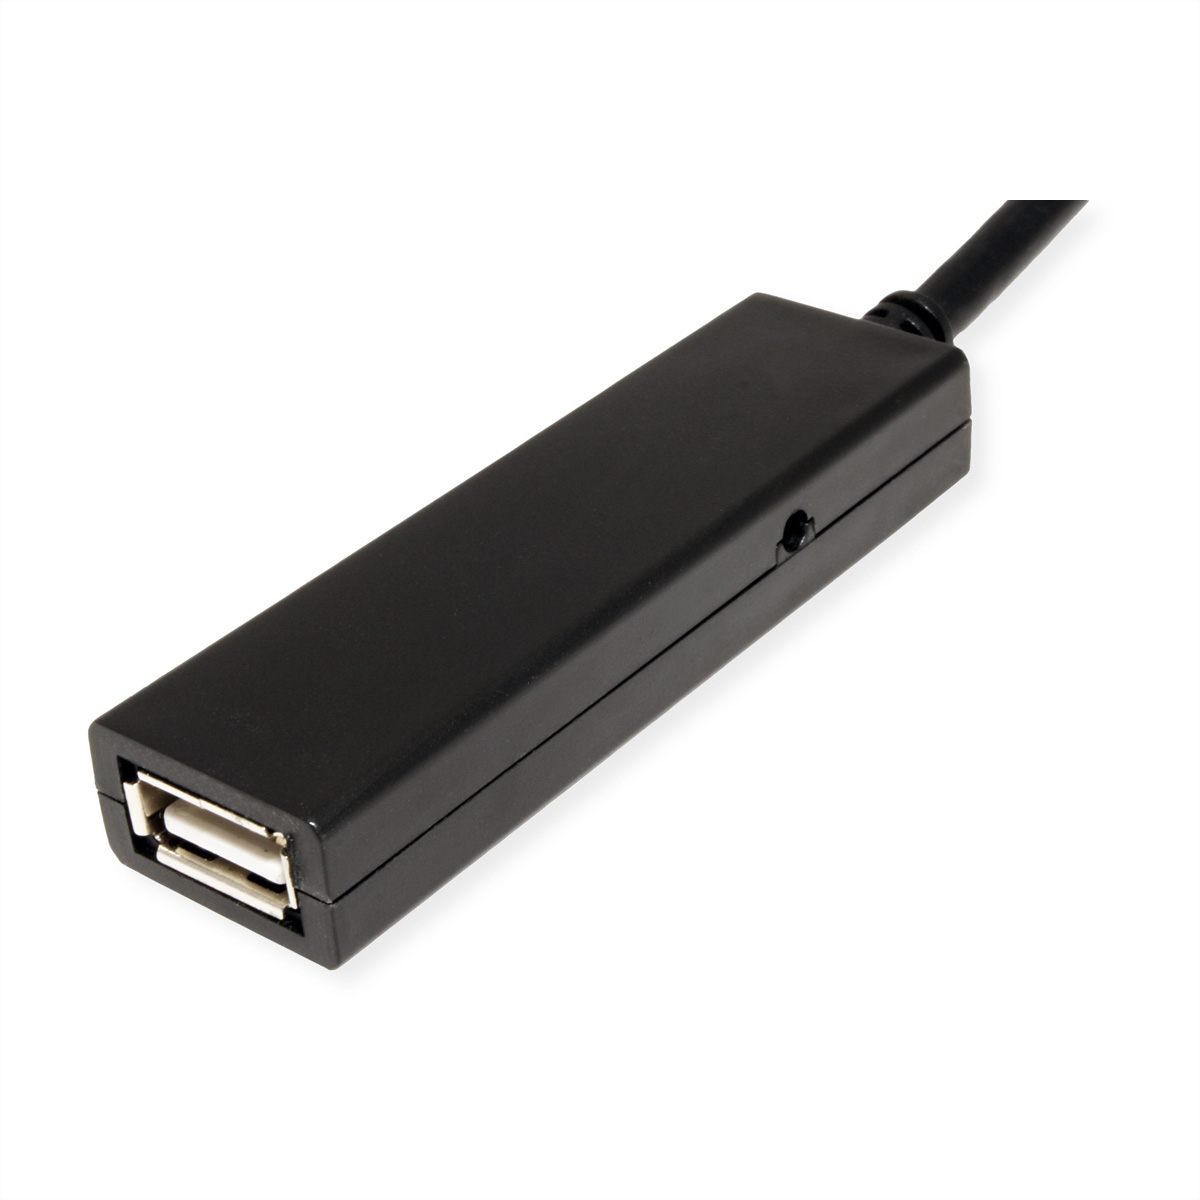 aktiv, A-C 2.0 VALUE Repeater, USB-Verlängerung USB Verlängerung, mit